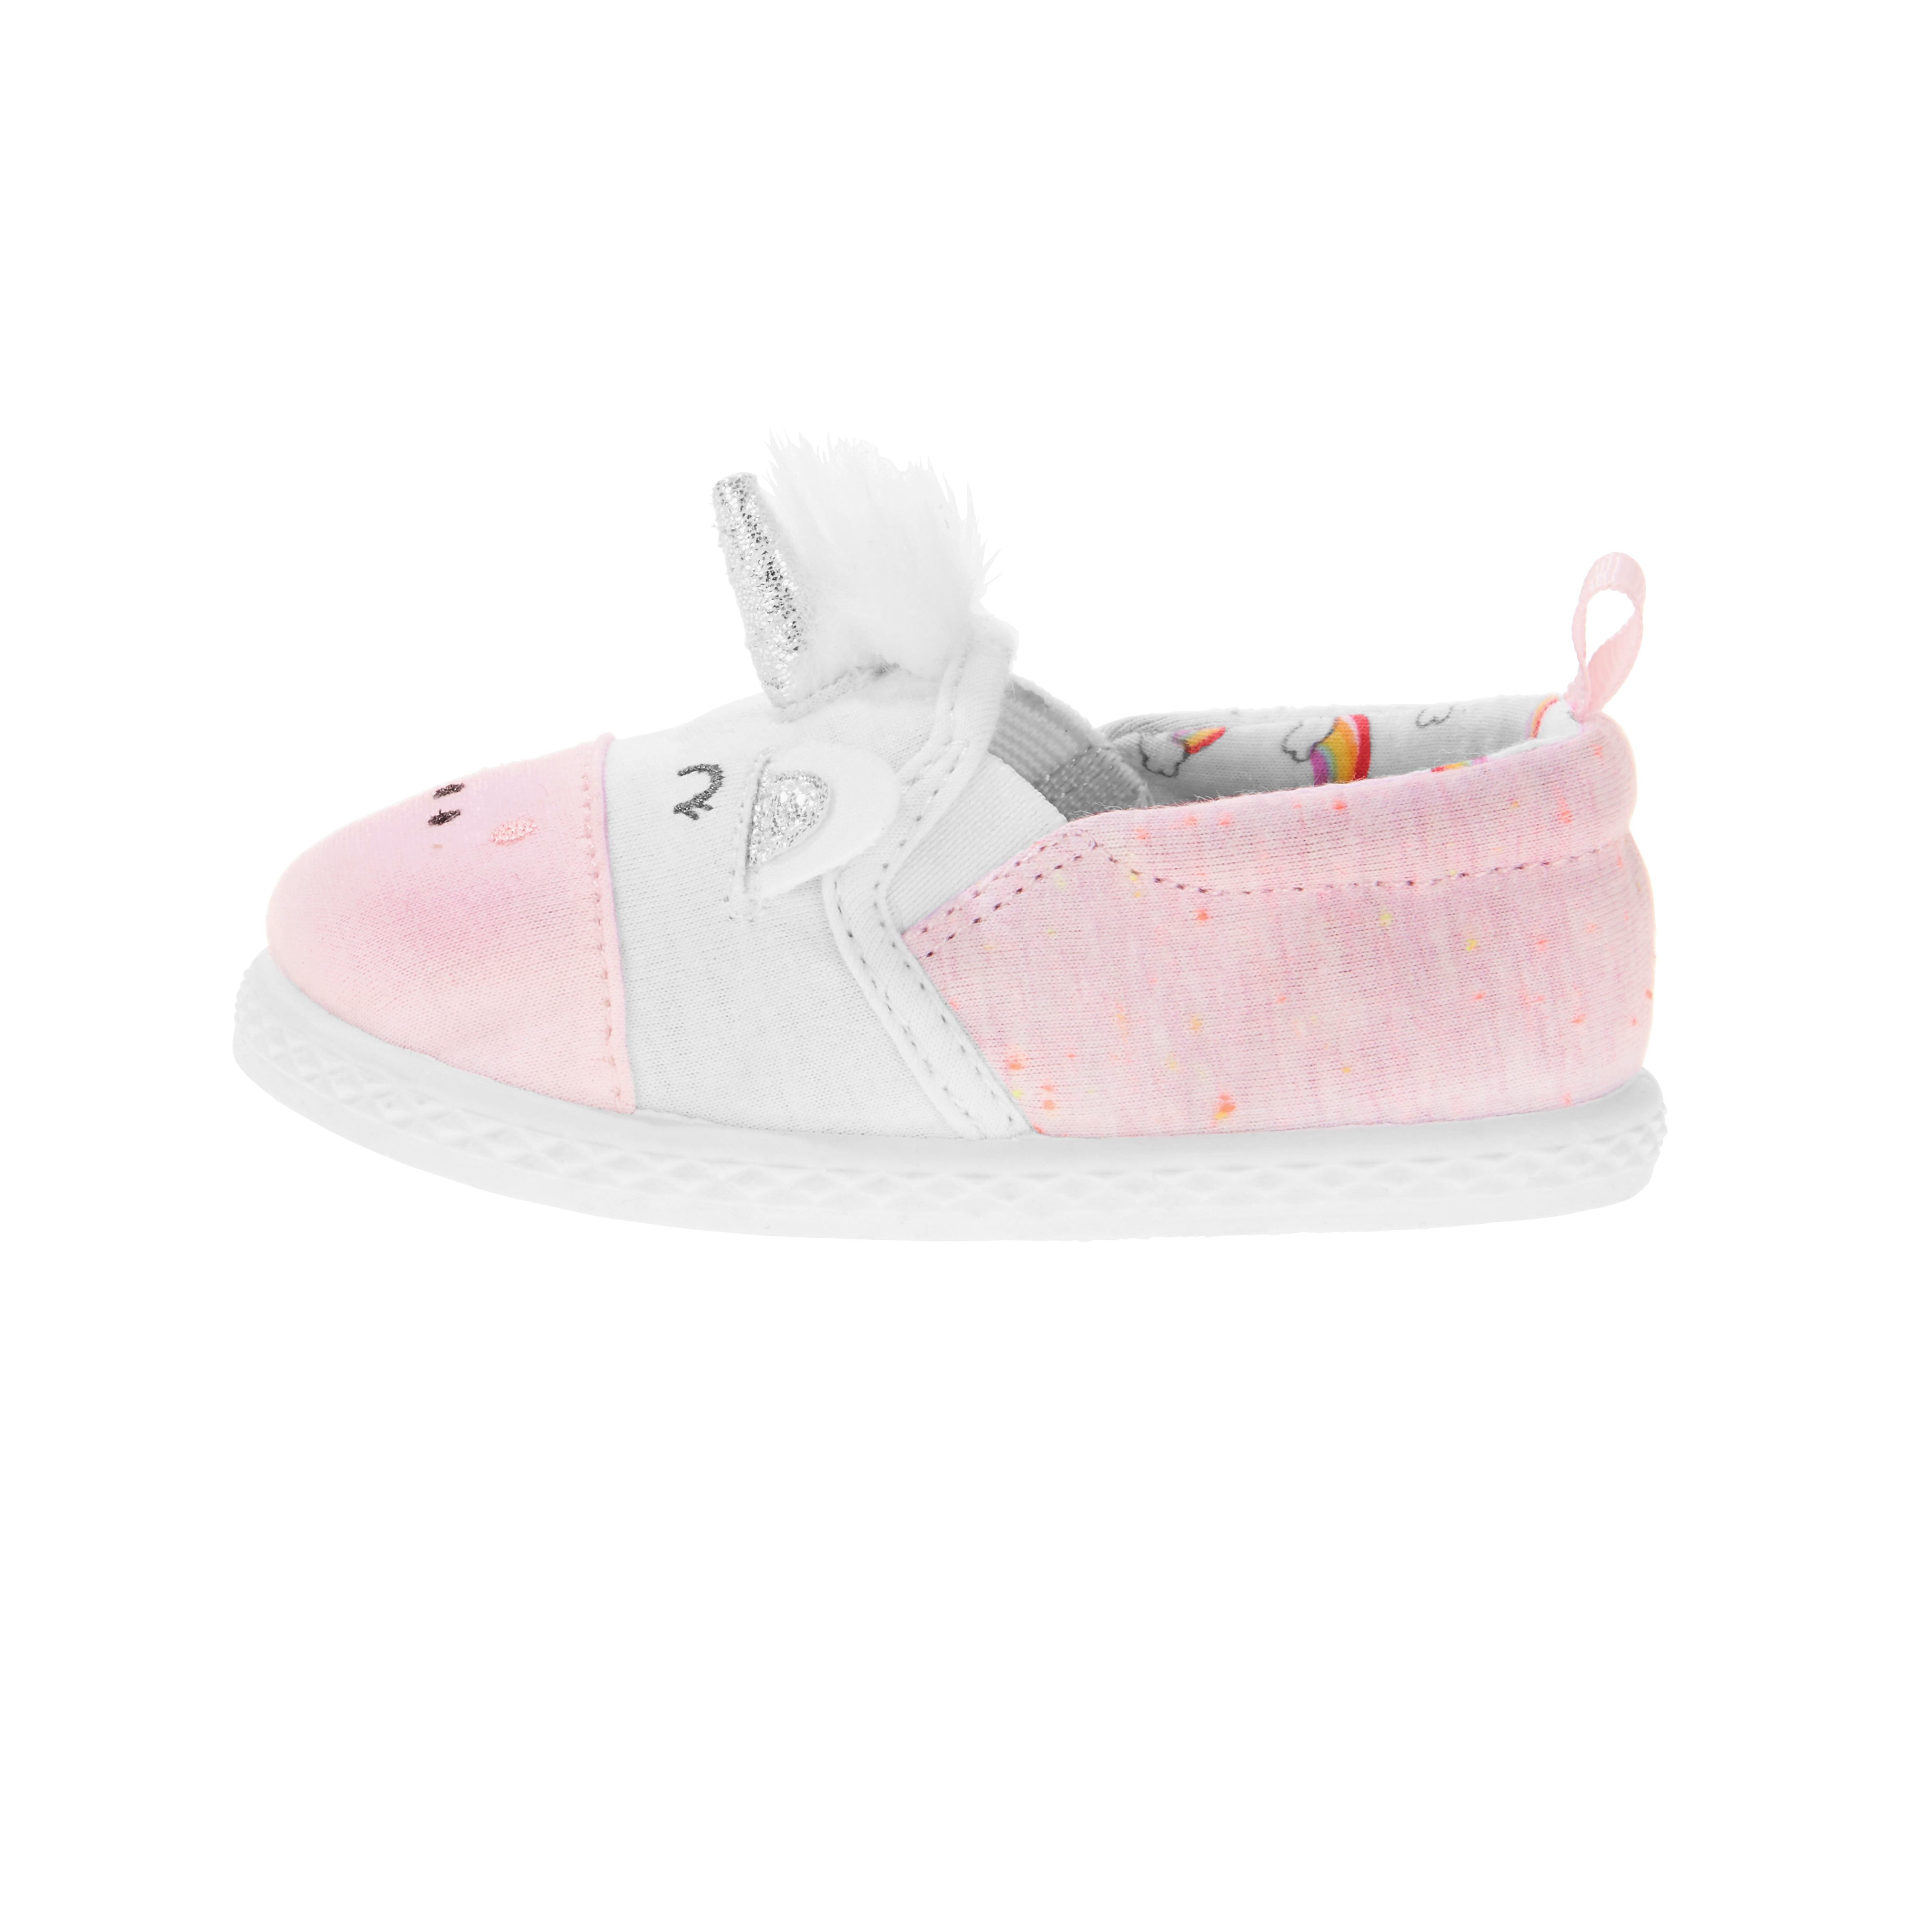 walmart unicorn baby shoes